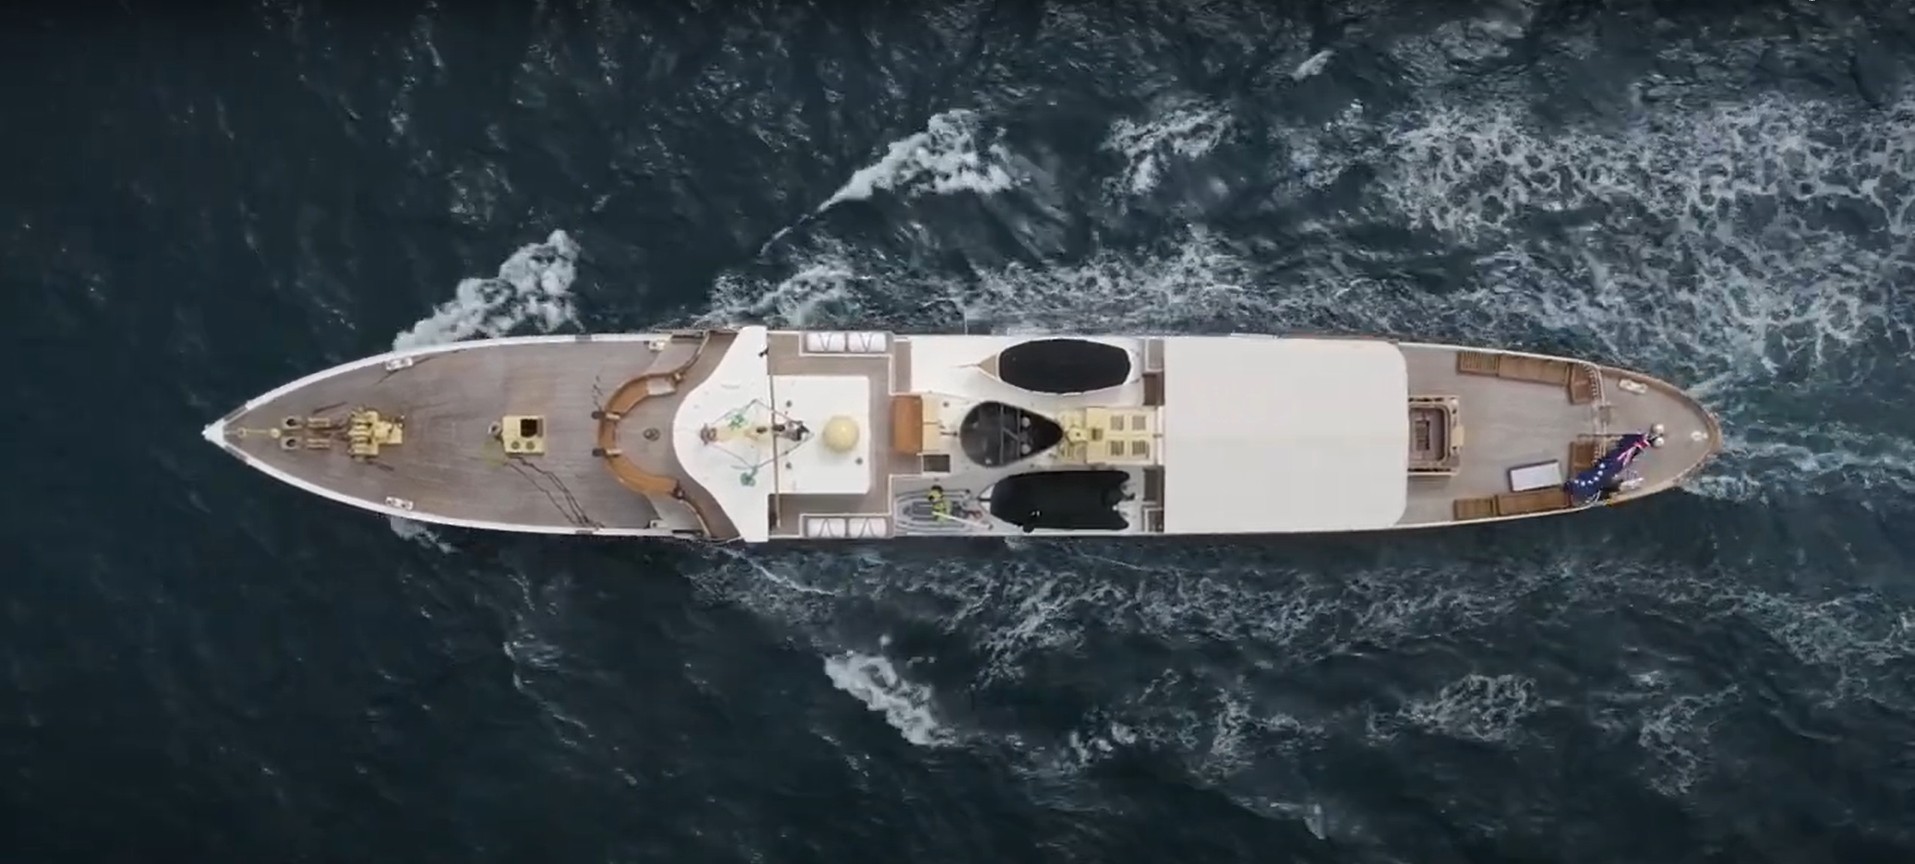 who owns marala yacht